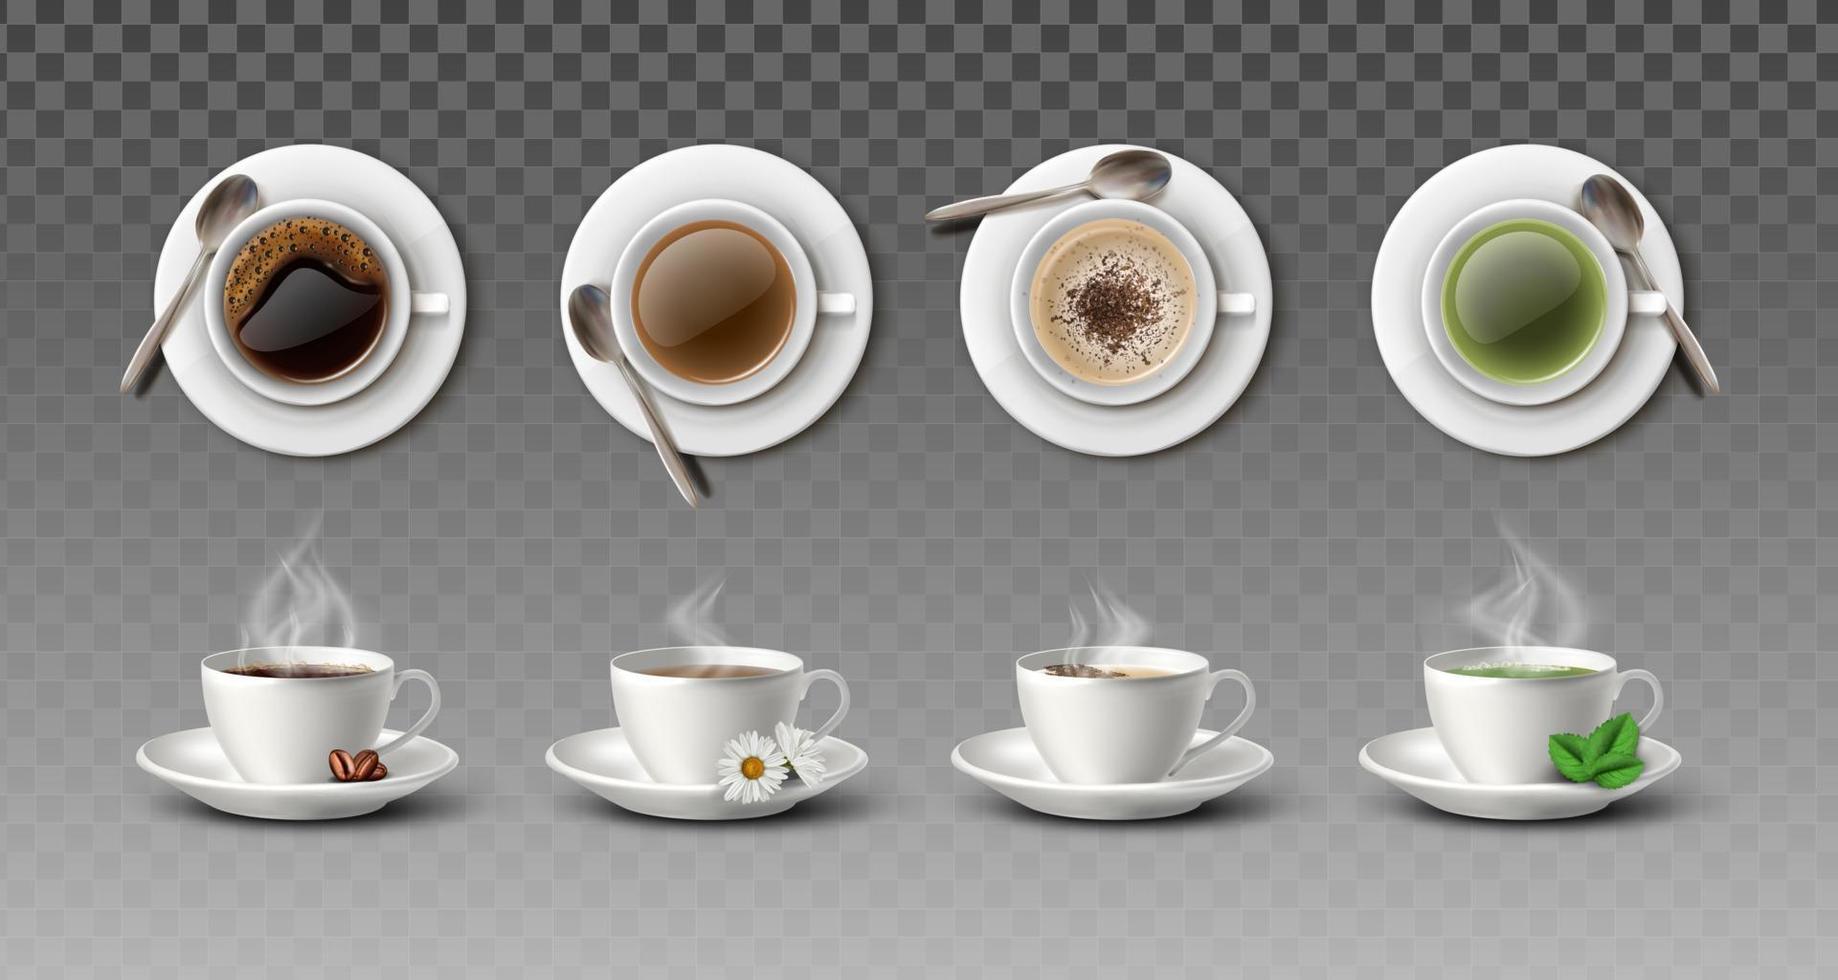 Collezione vettoriale realistica 3d di tazze da caffè bianche con cucchiai nella vista laterale e dall'alto: cappuccino, americano, tè nero e tè verde.